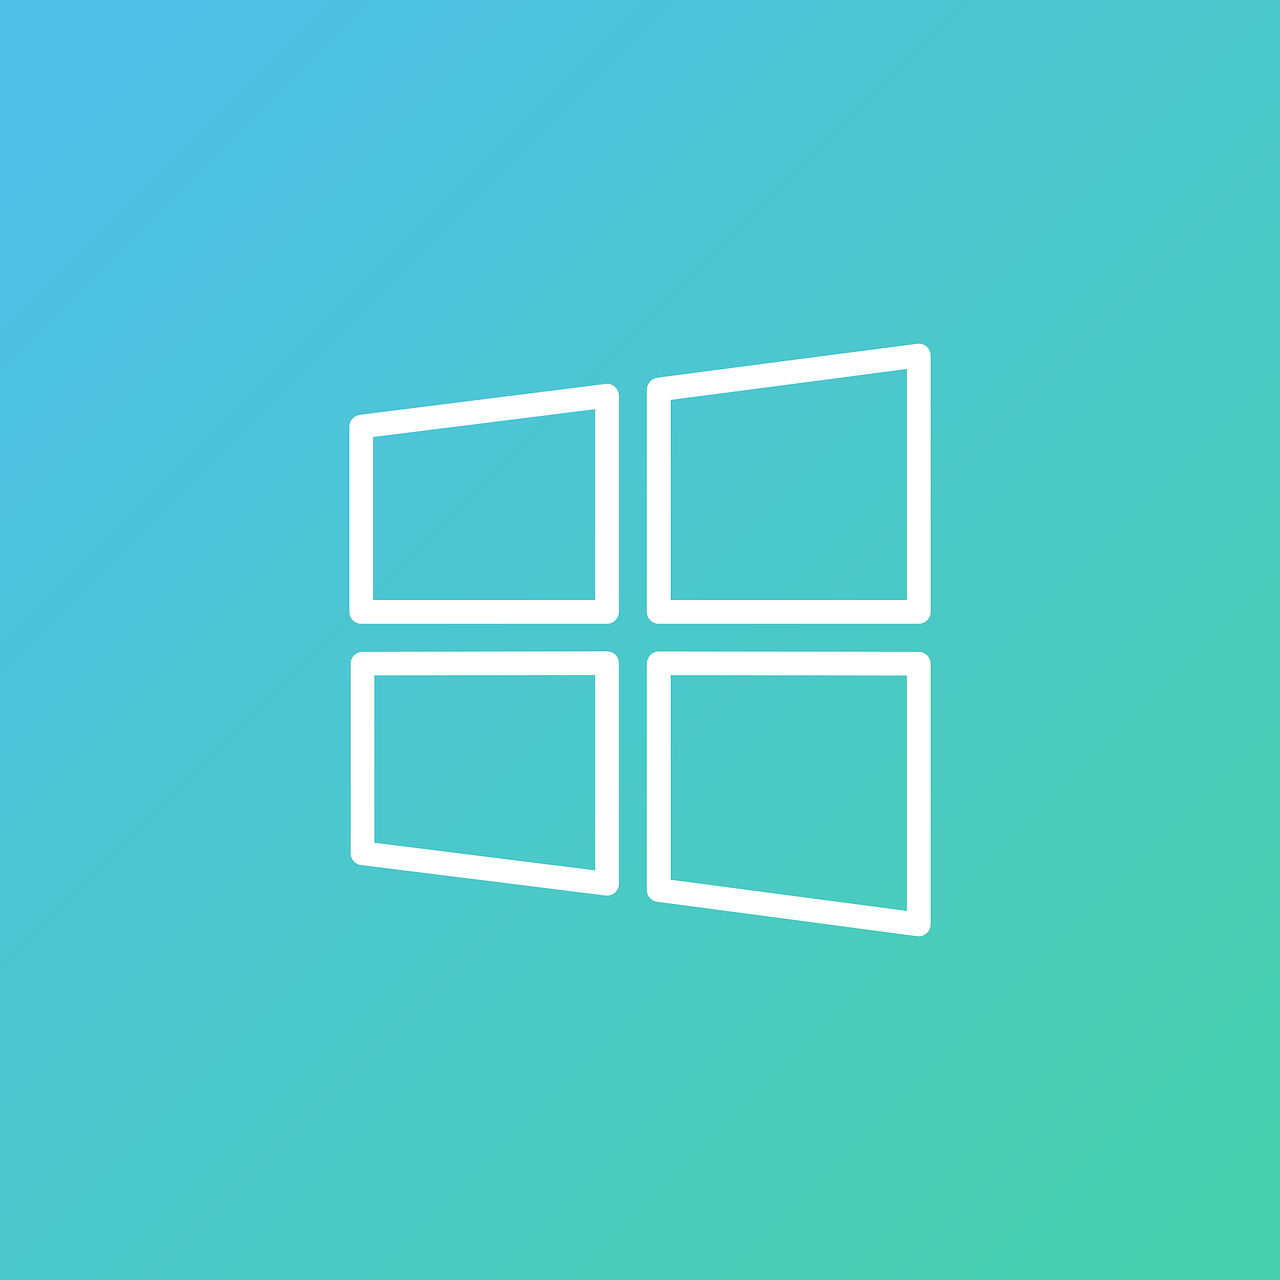 windows  windows icon  windows logo free photo